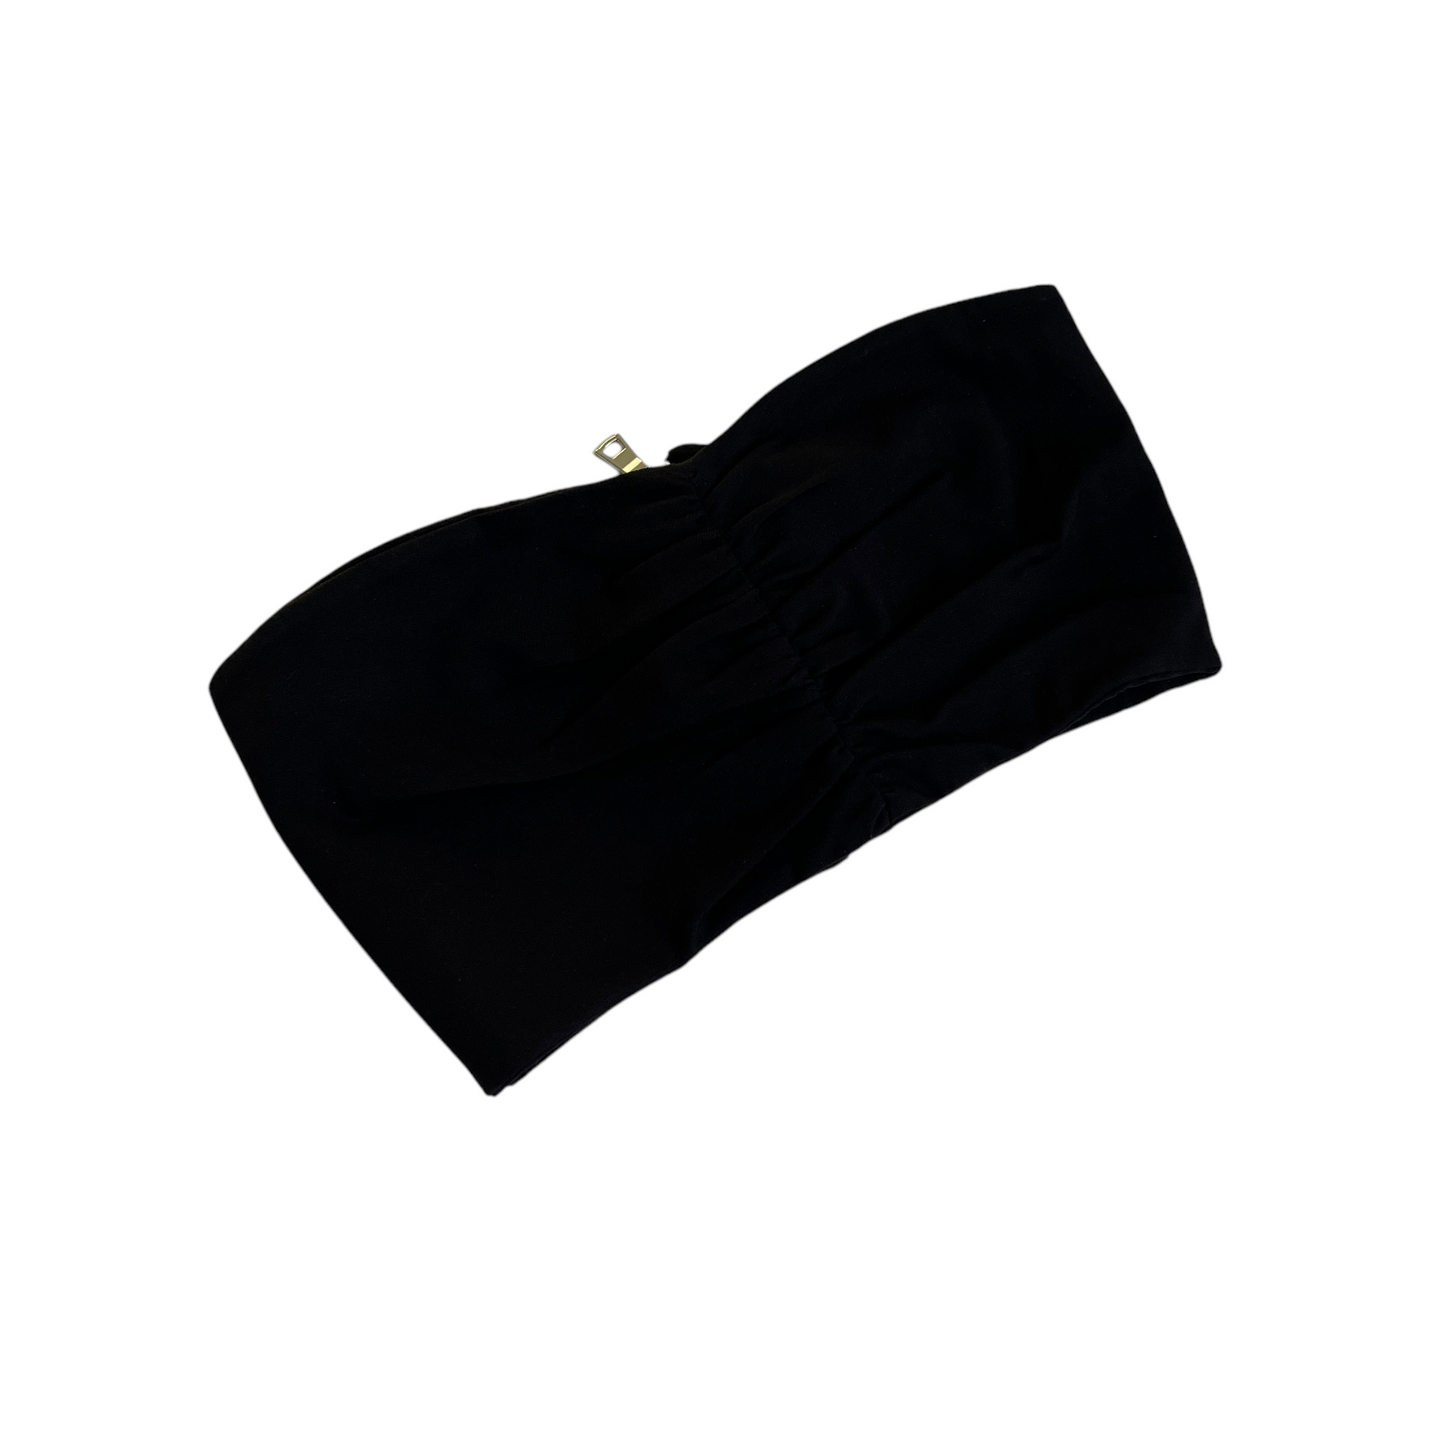 SABLYN Octavia Crop Top in Black